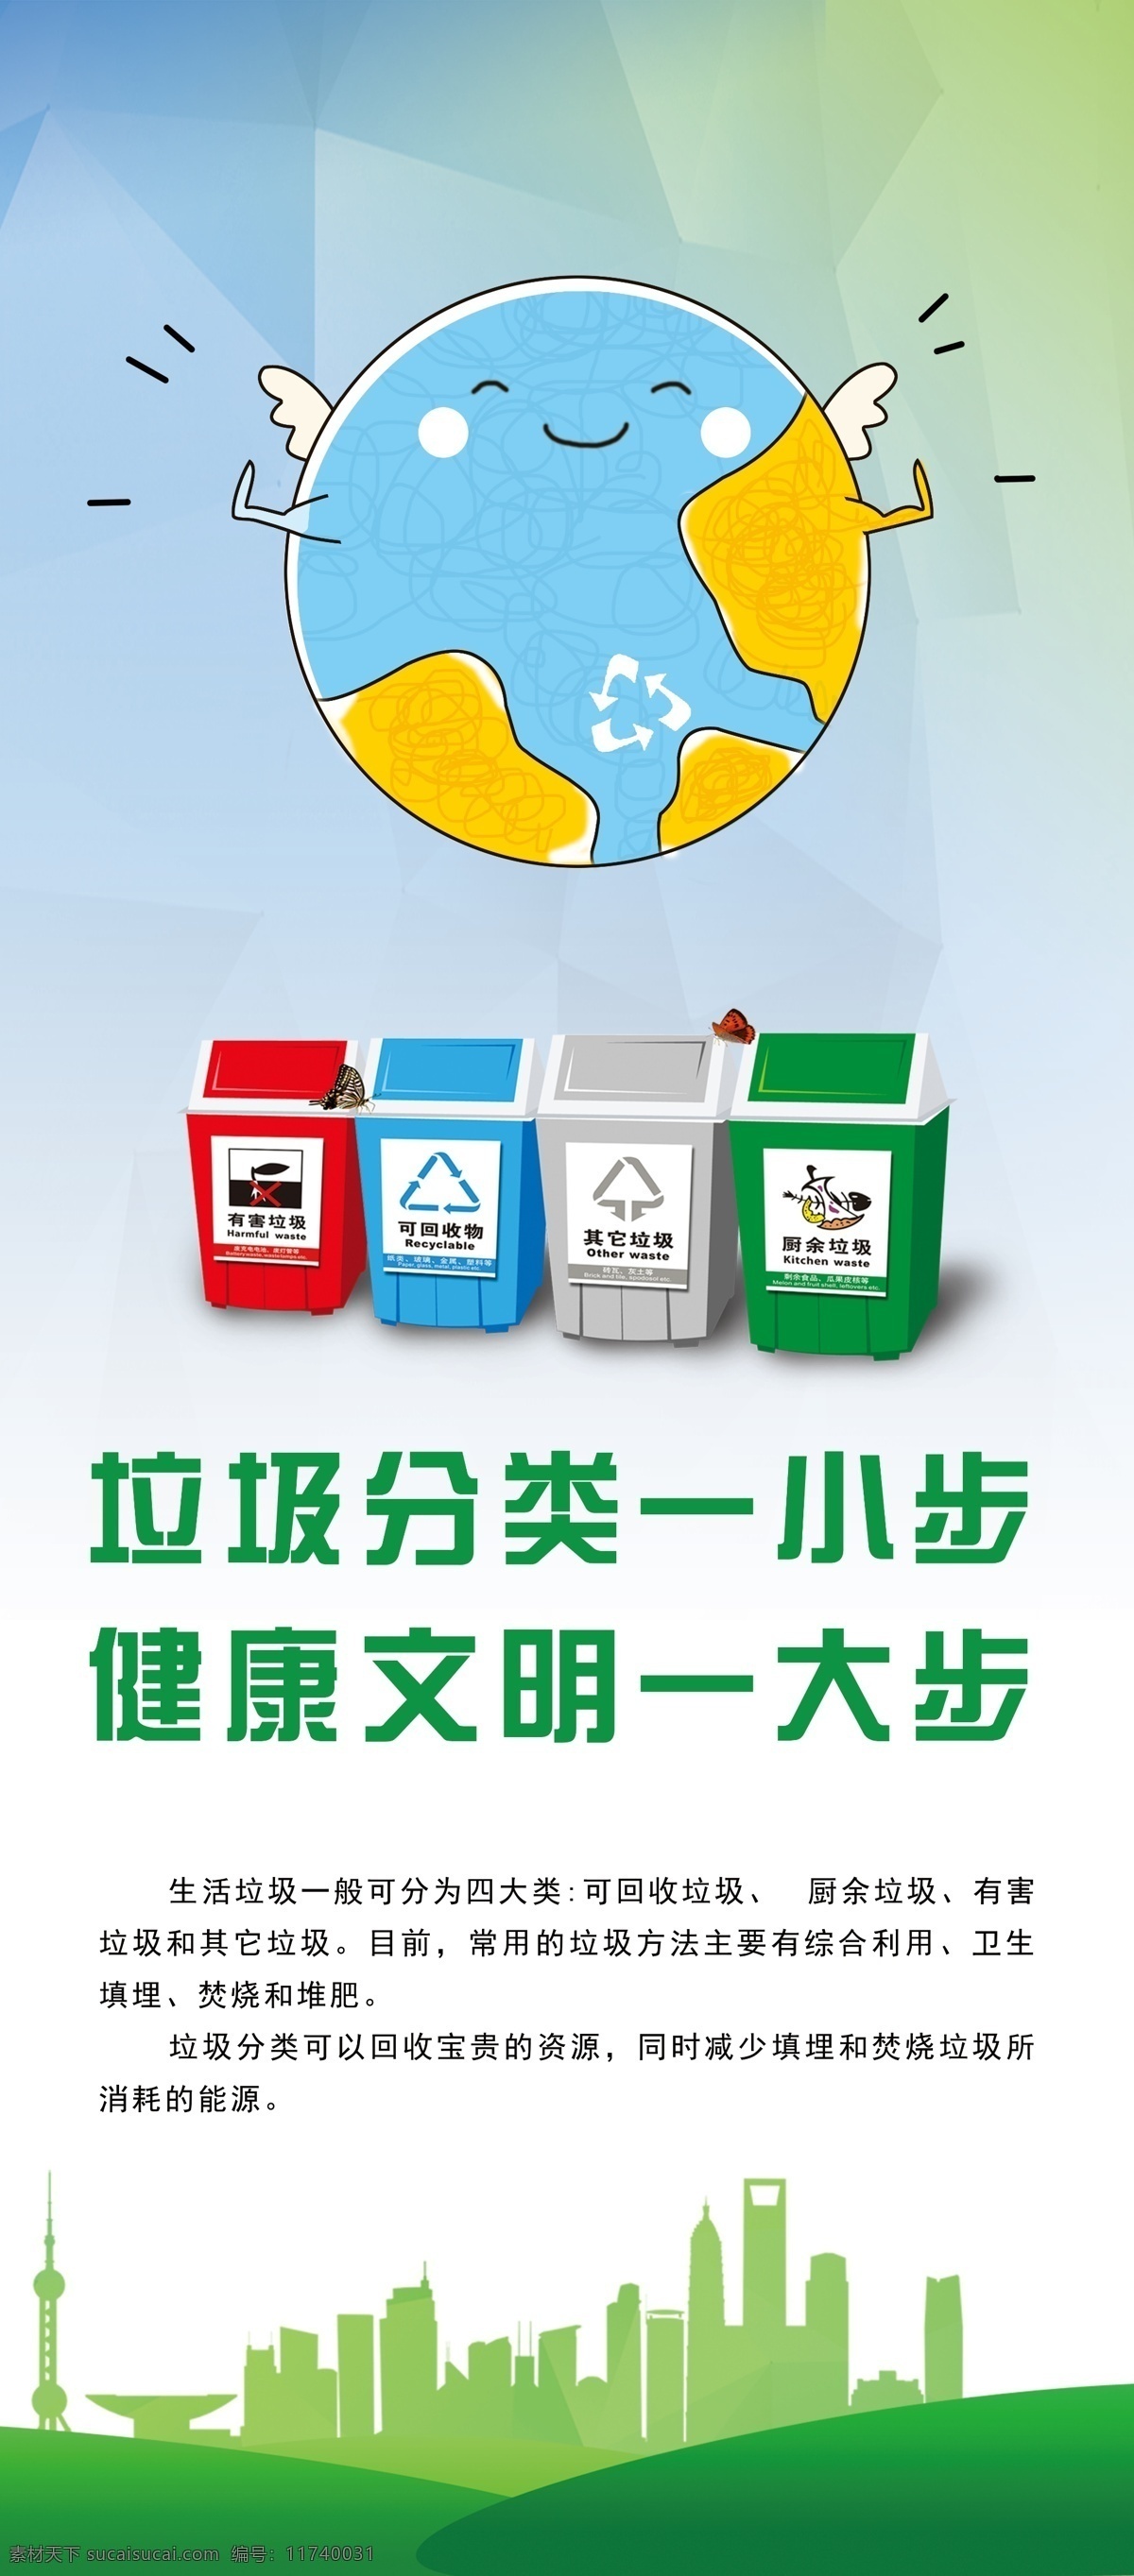 垃圾分类 垃圾分类展板 垃圾分类海报 垃圾 分类 易拉宝 垃圾分类背景 环境保护 环境保护展板 环境海报